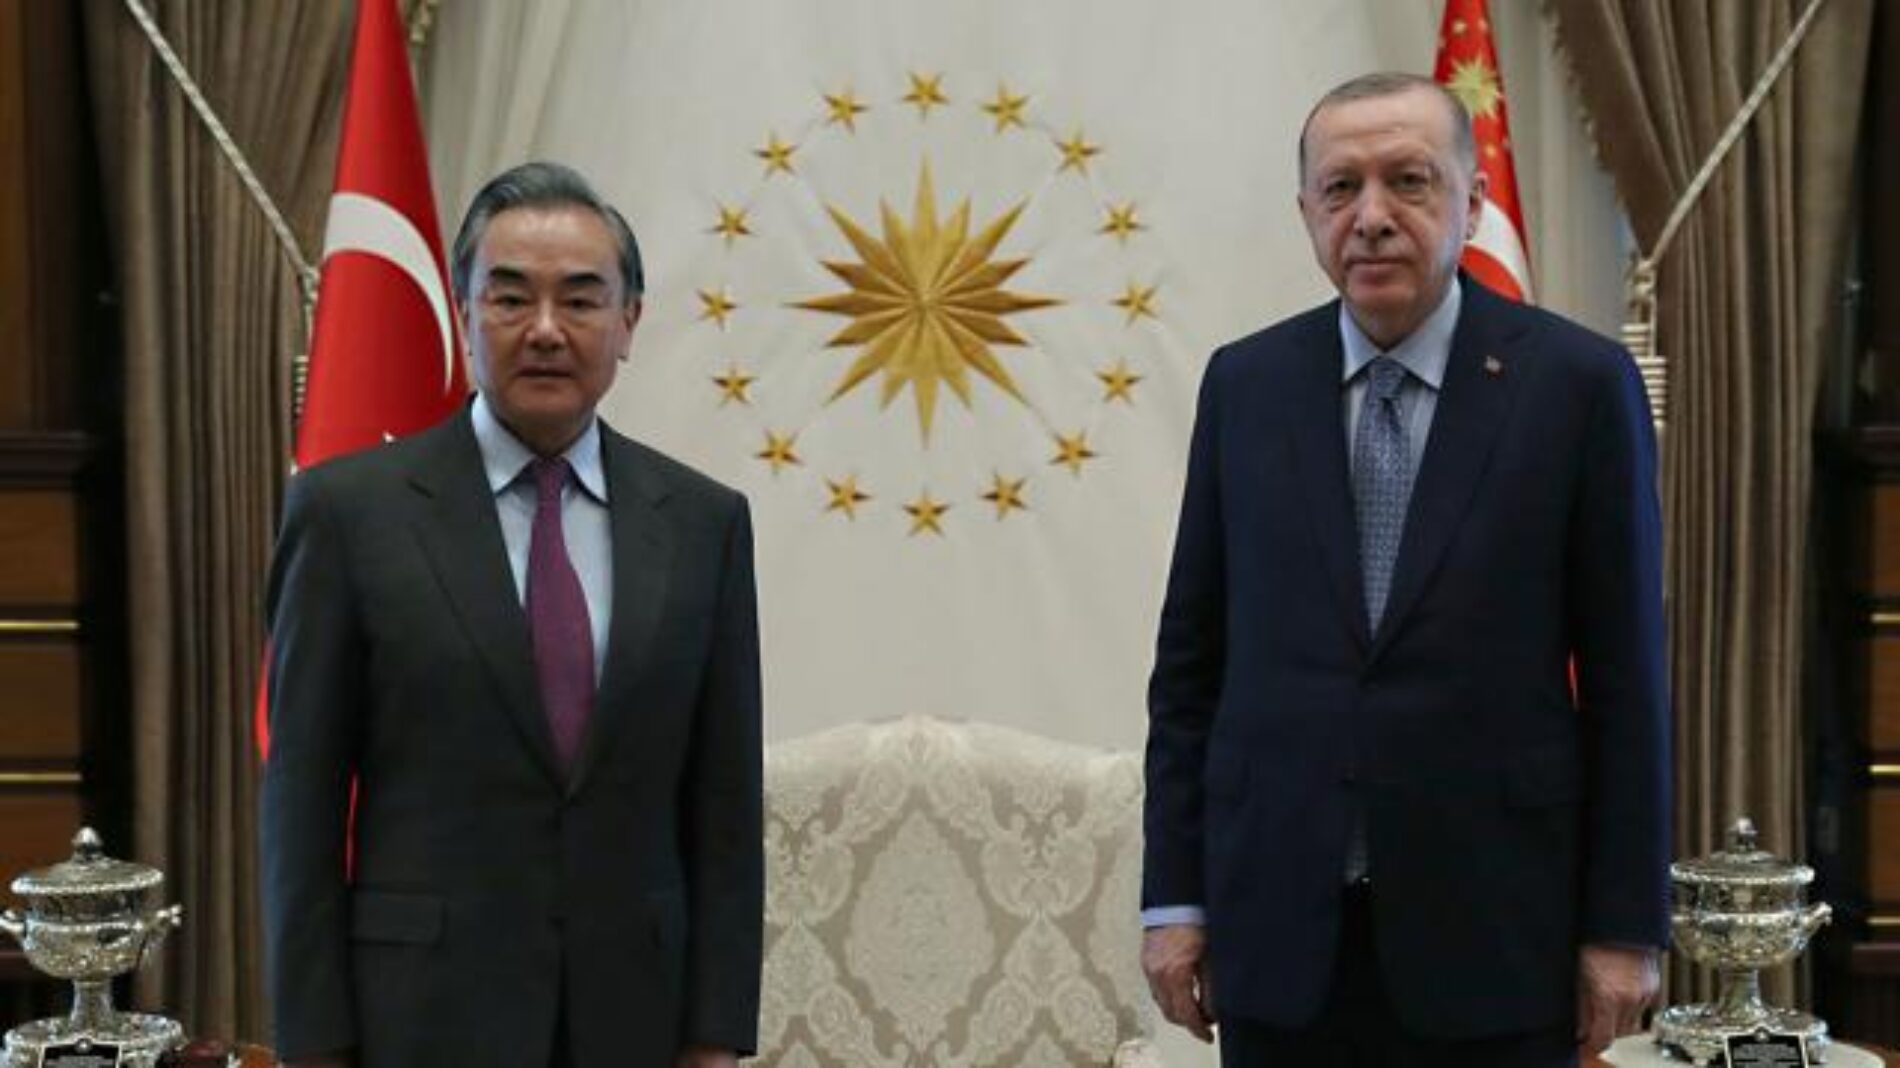 Çin Dışişleri Bakanı Sn. Wang Yi Resmi Ziyaretleri Kapsamında Türkiye’ye Geldi